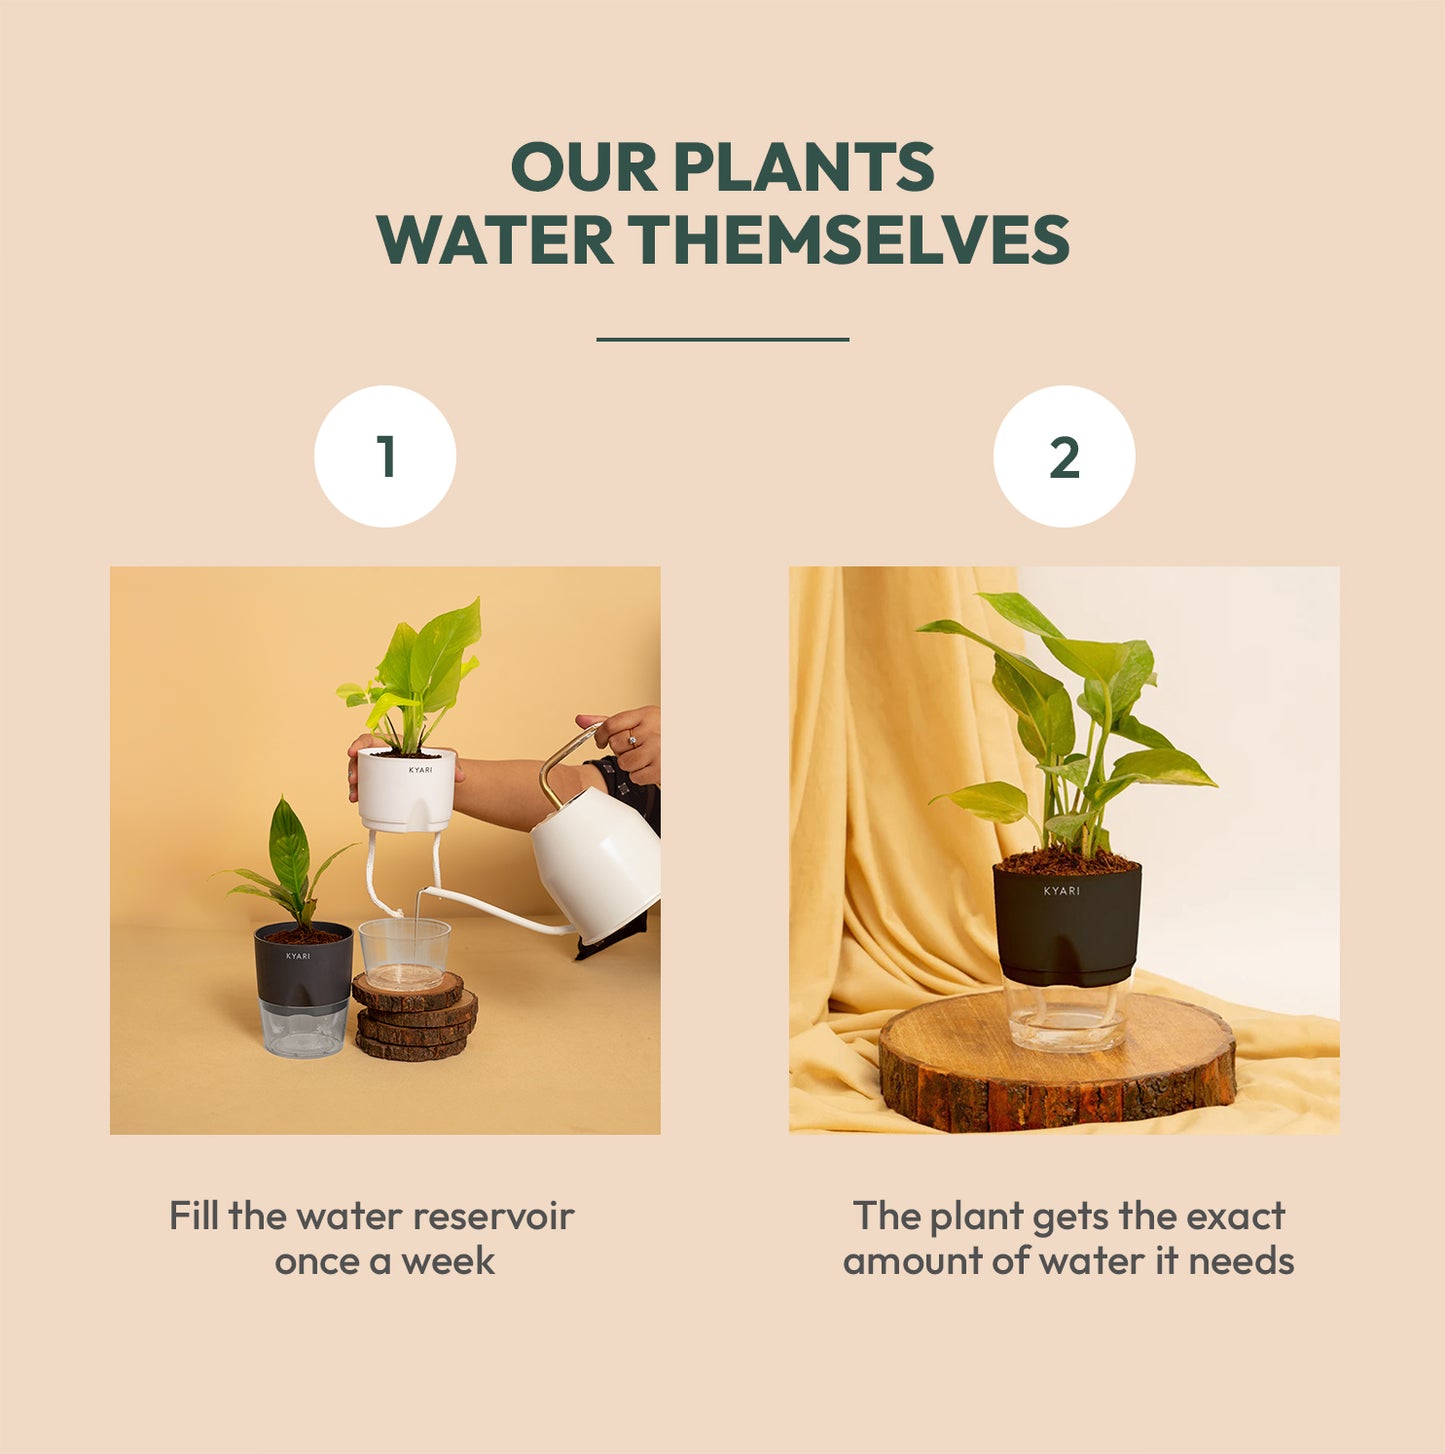 Schefflera Variegated Live Indoor Plant with Self Watering Pot